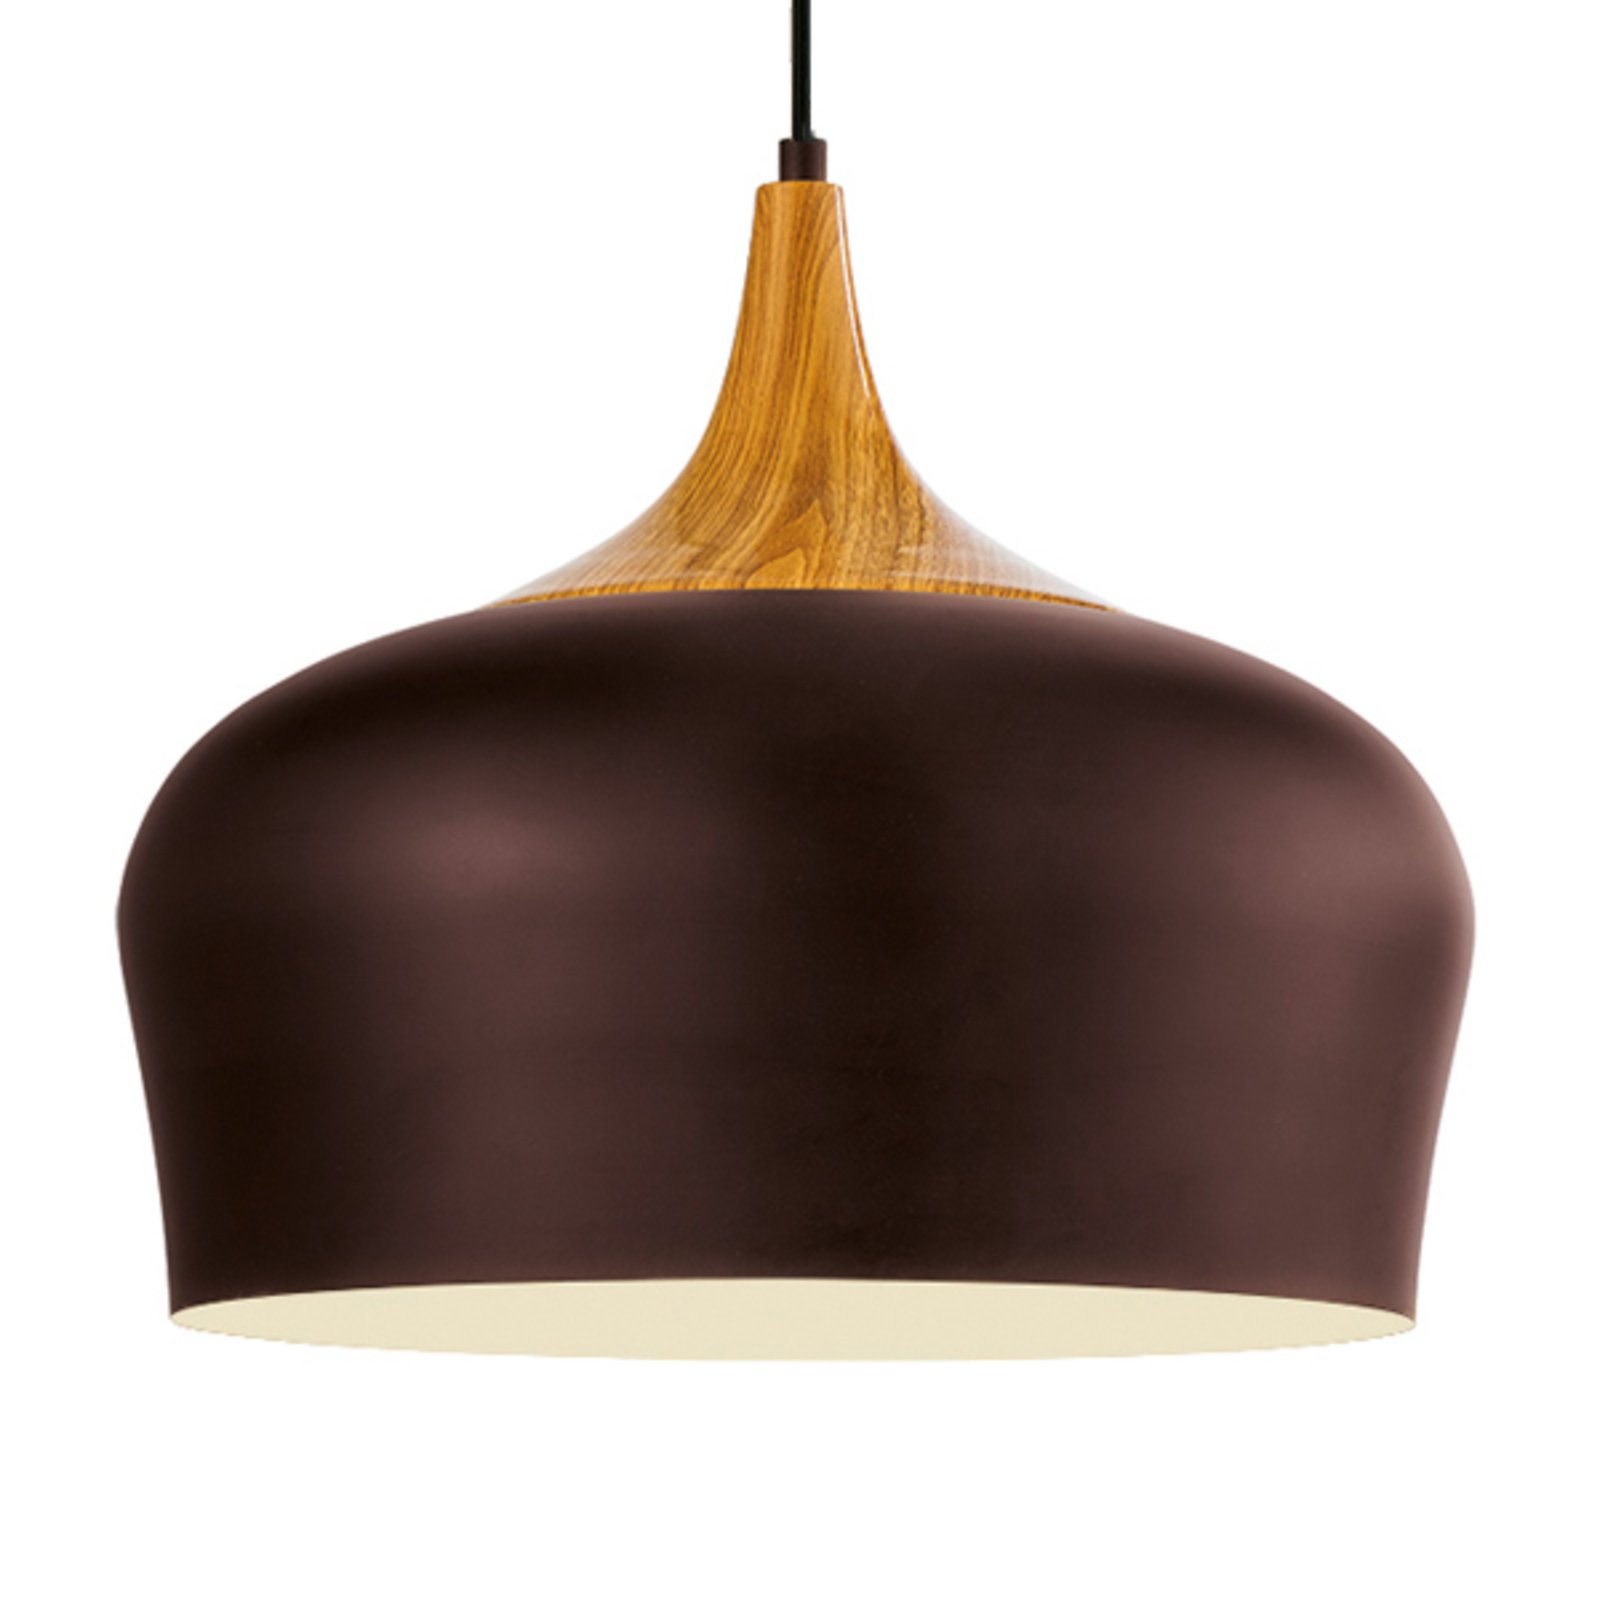 Obregon - elegant pendant lamp in brown